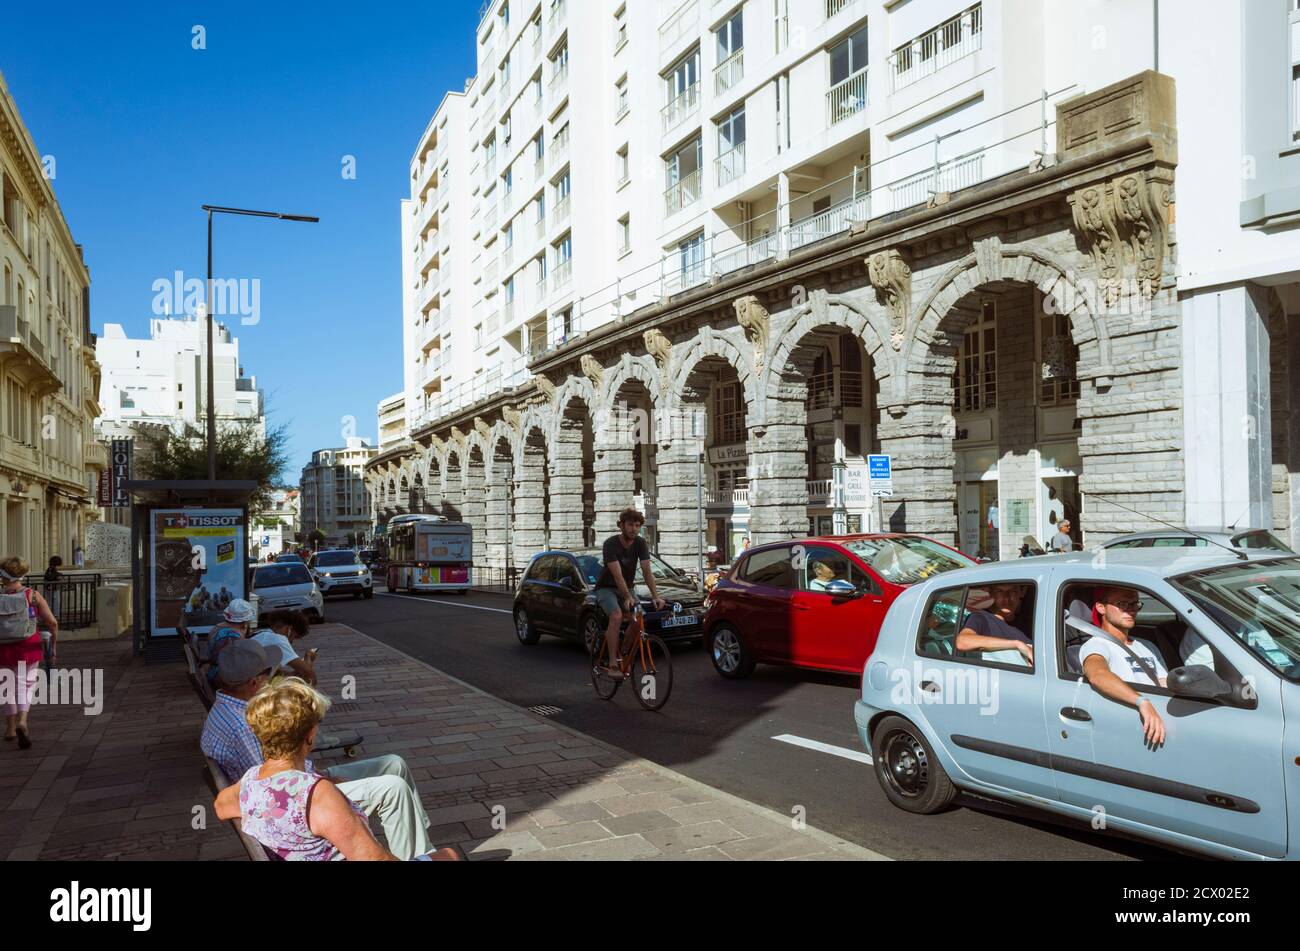 Biarritz, pays basque français, France - 19 juillet 2019 : les gens s'assoient et se conduisent dans le centre-ville de Biarritz. Banque D'Images